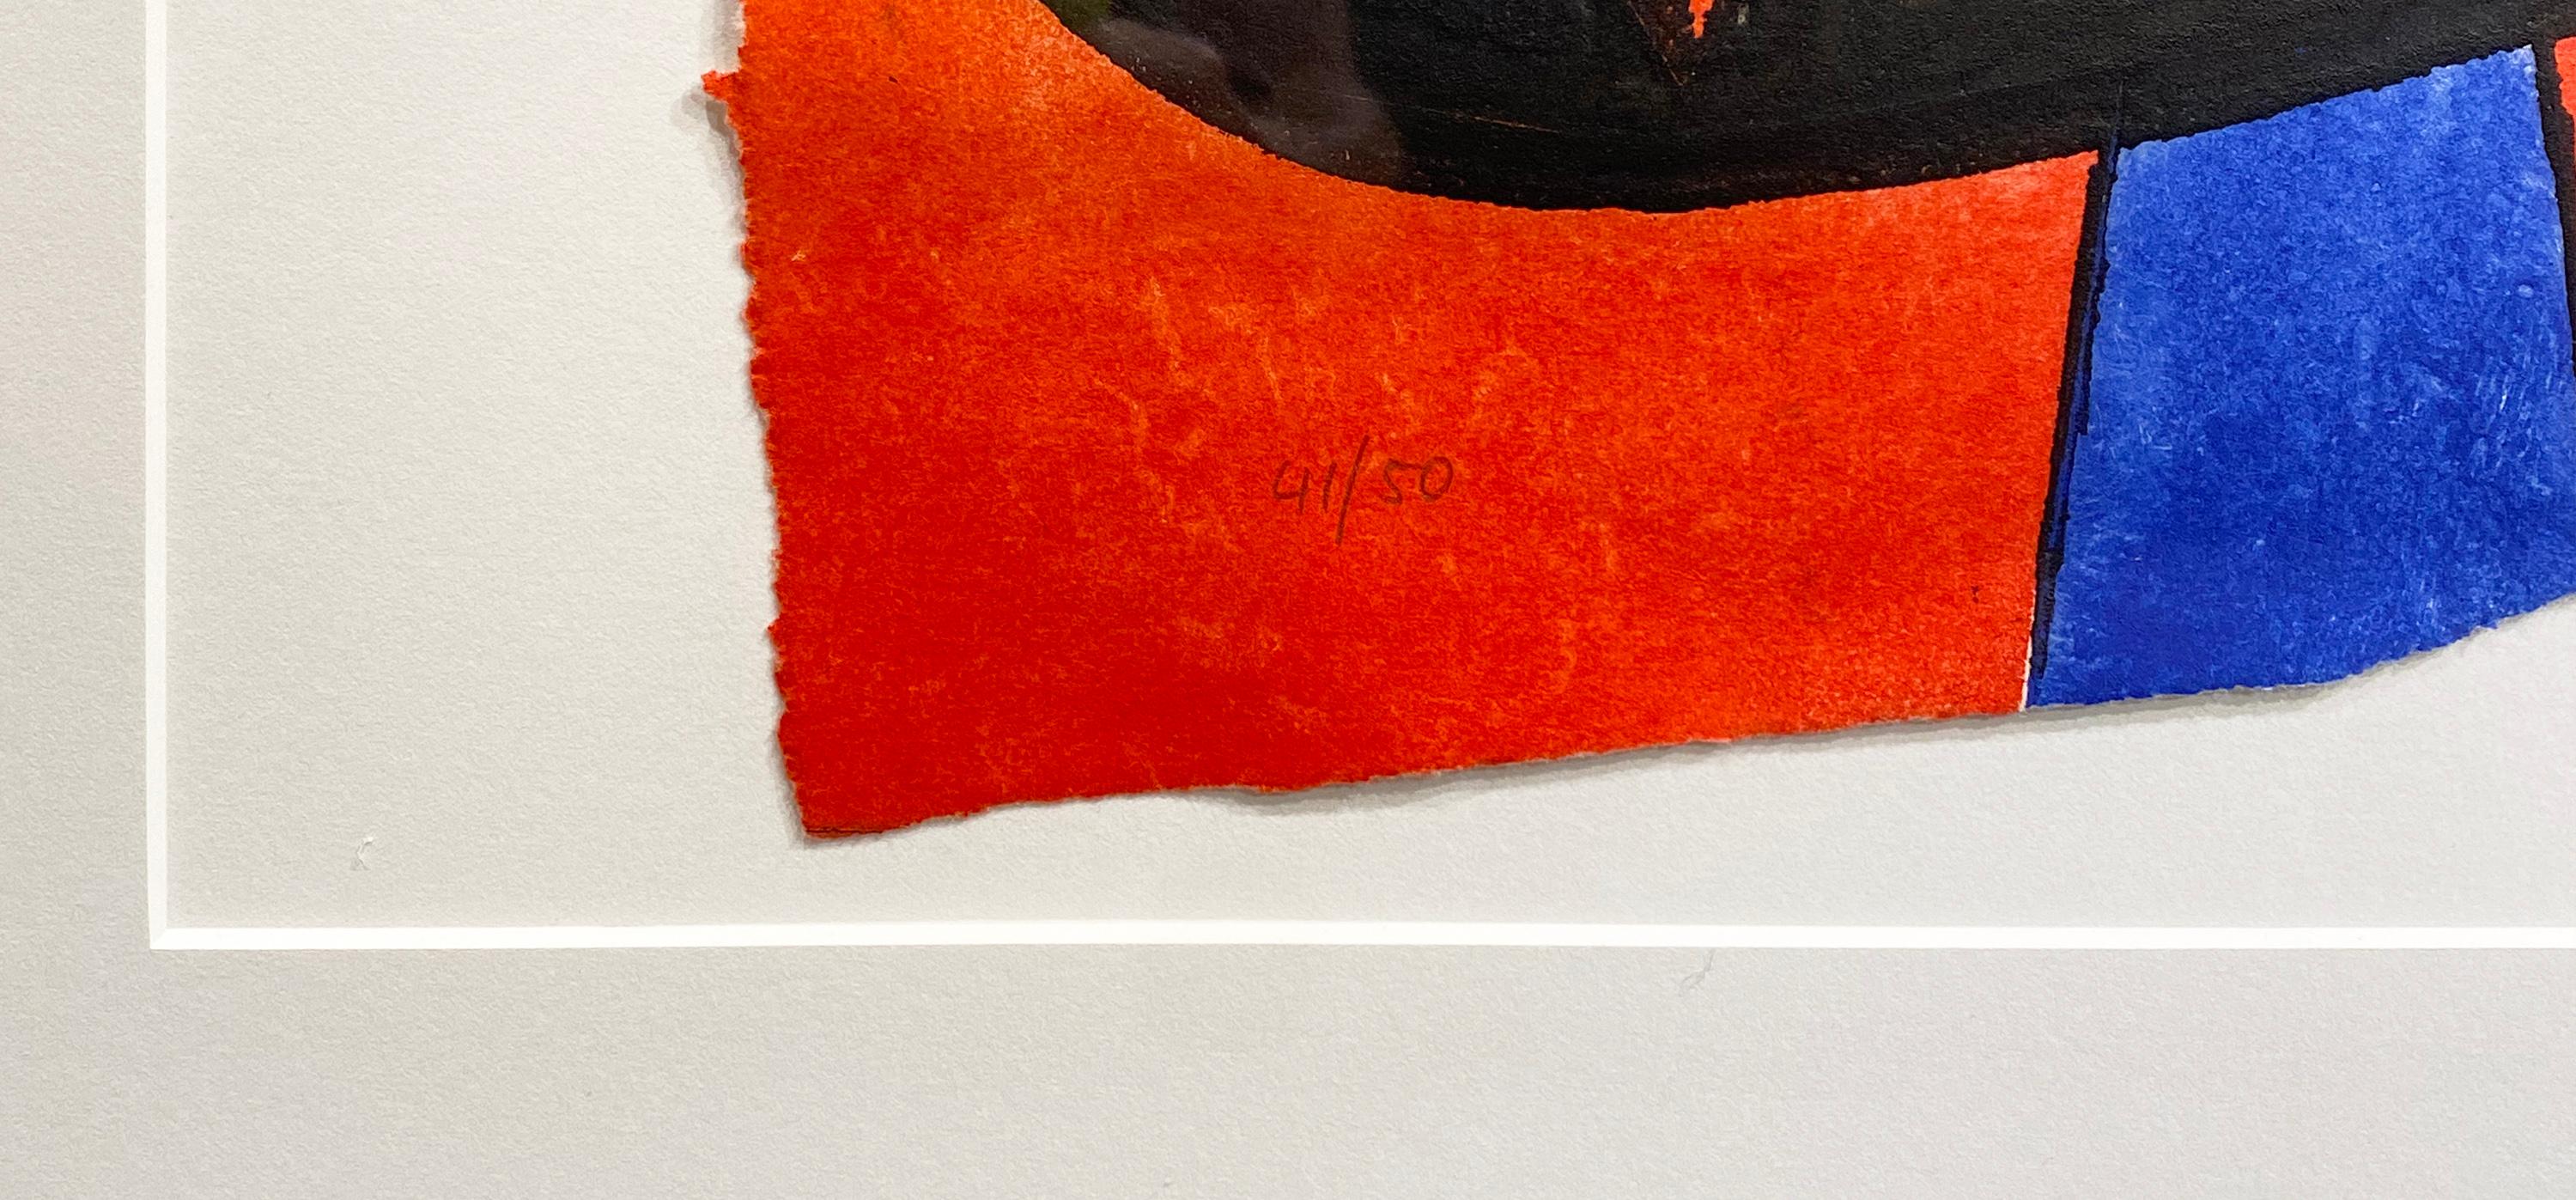 Gaudi XX, (D. 1079), 1979
Par. Joan Miro
Signé en bas à droite
Edition 41/50 En bas à gauche
Sans cadre : 37.5